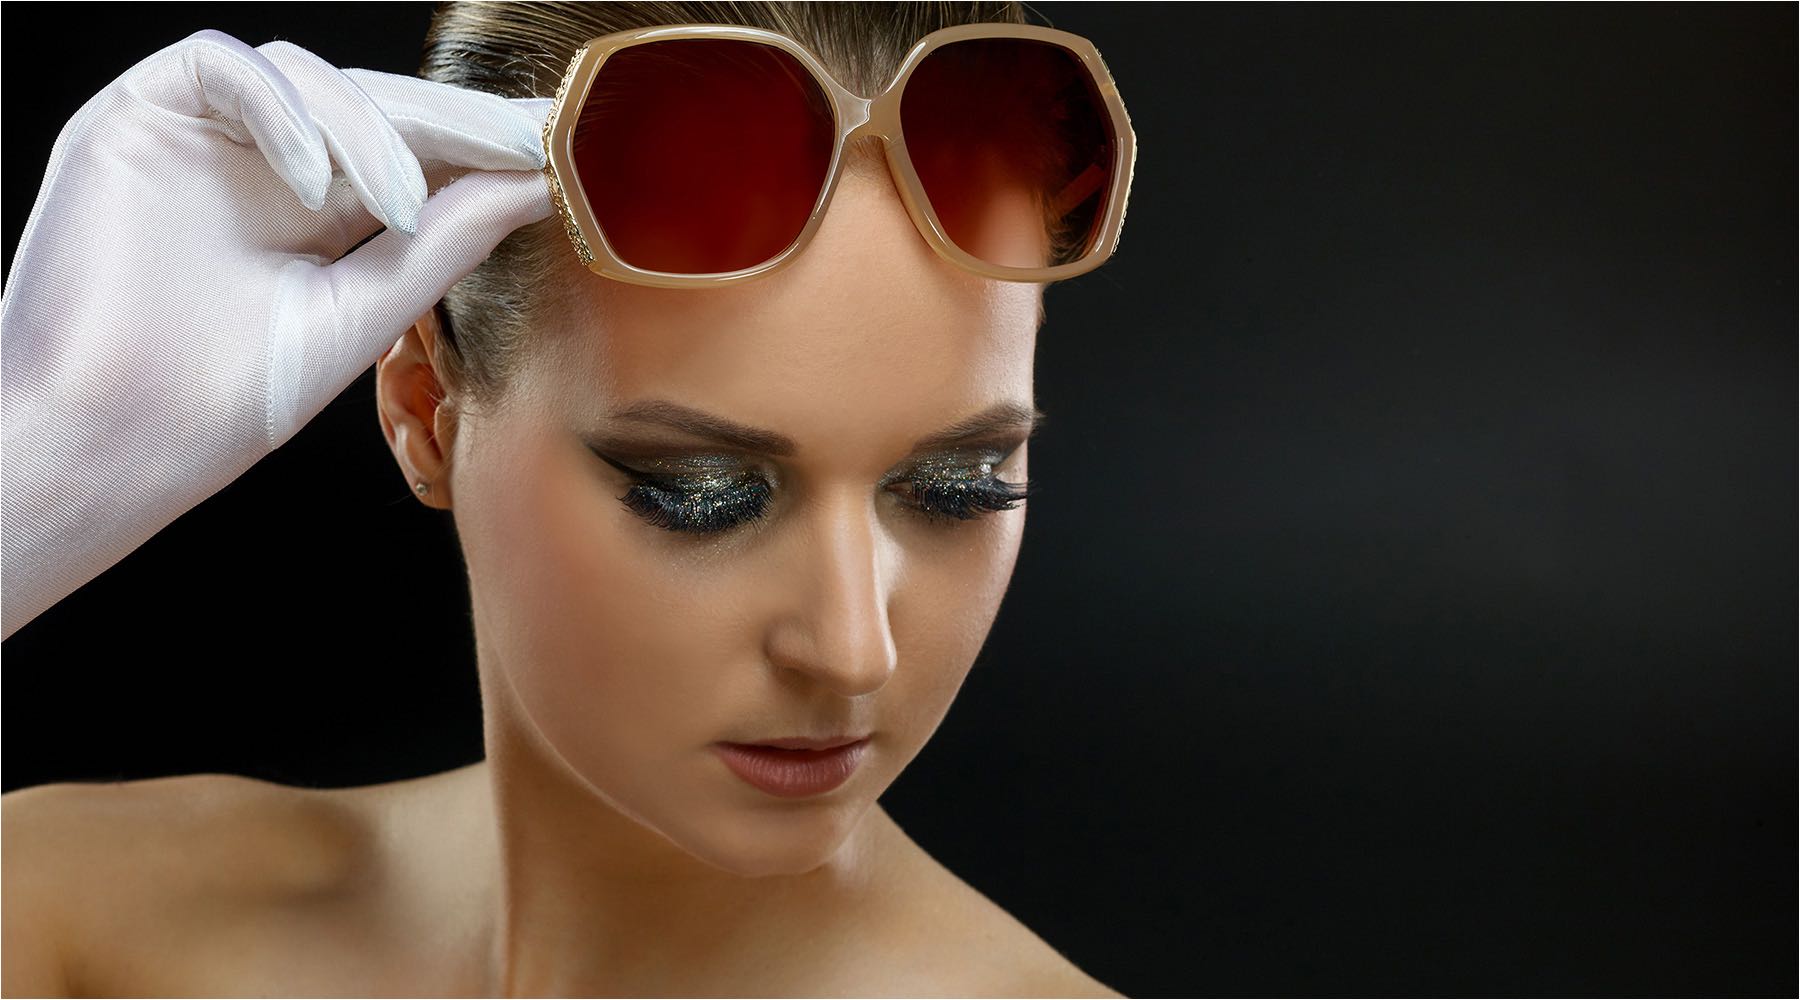  Porträtfotografie. Brillenshooting mit aufwendigem Makeup im Studio fotografiert. Model in weissen Handschuhen und Brille von Dolce & Gabbana. 